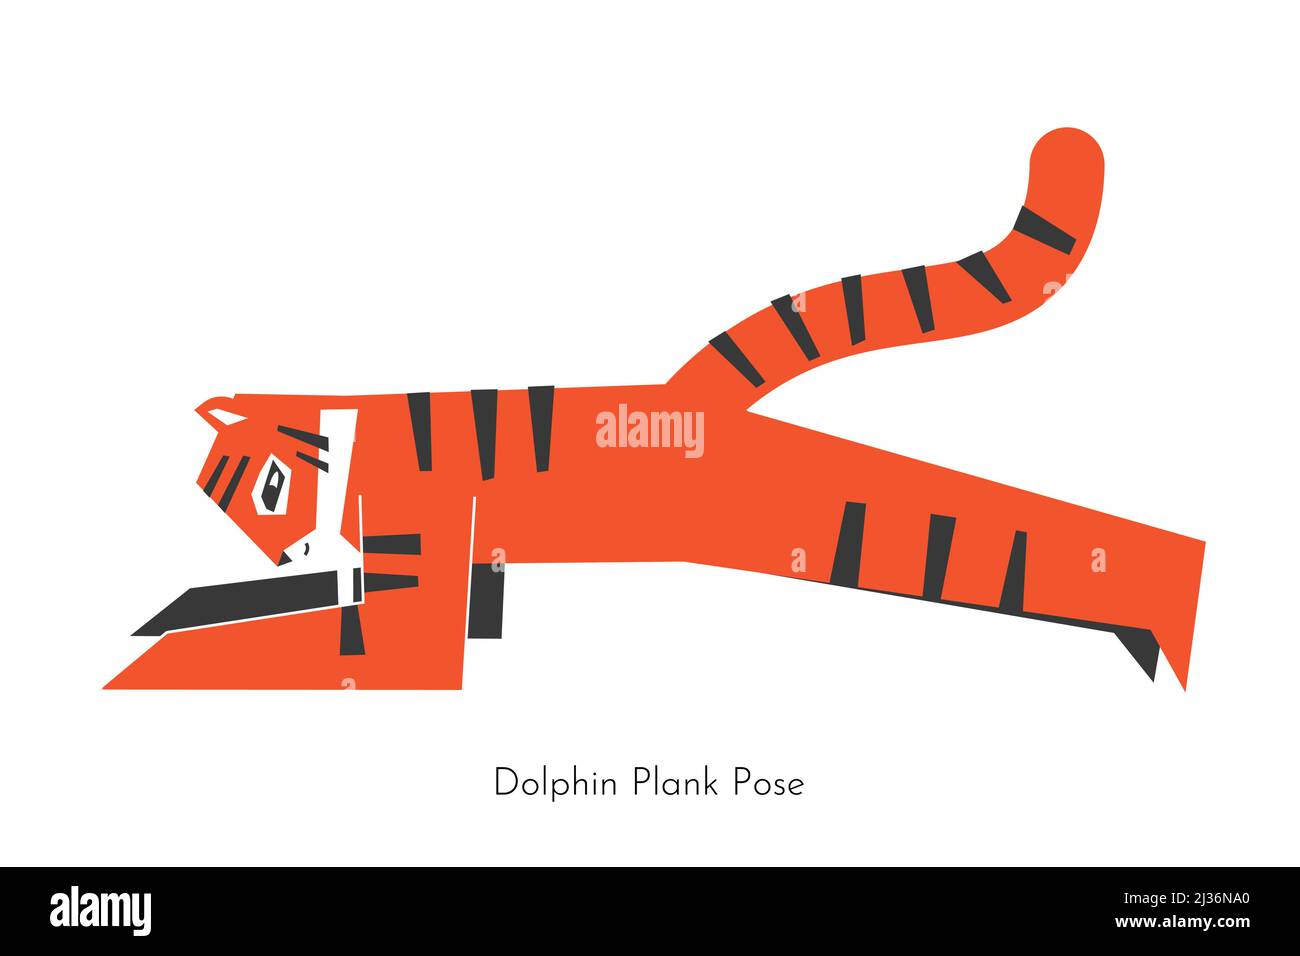 Vektor isoliert flache Illustration mit Cartoon Tier tun Yoga-Praxis - Unterarm Plank. Asiatischer Tiger lernt Dolphin Plank Pose. Vereinfachtes Konzept w Stock Vektor